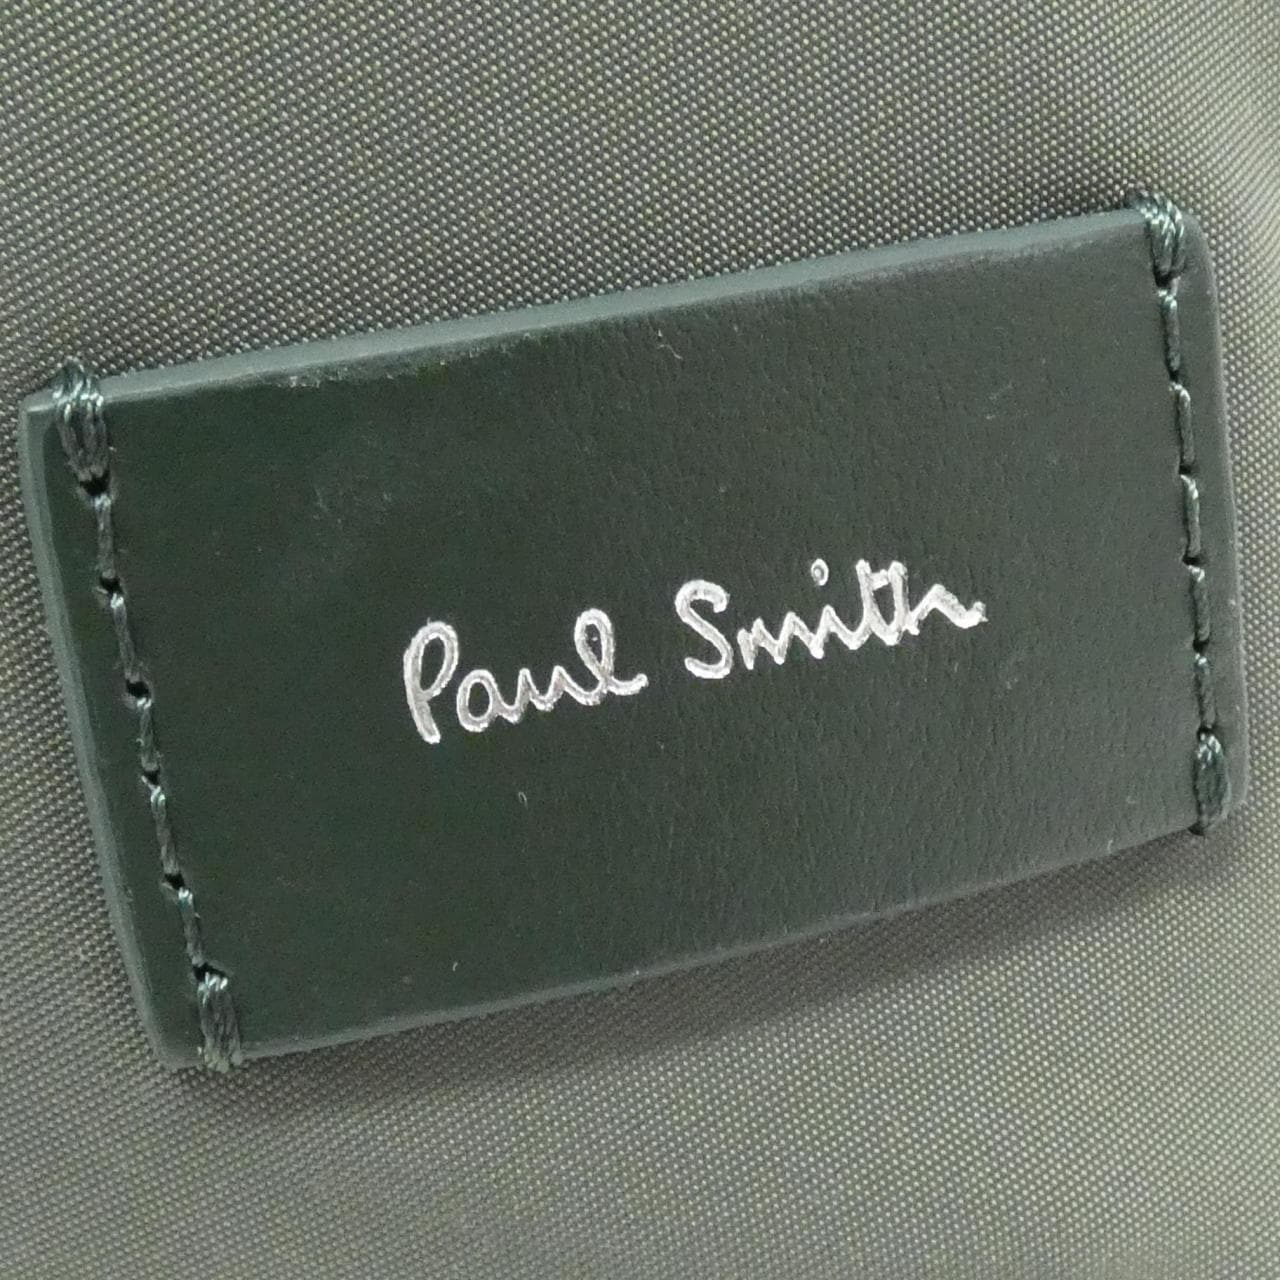 [BRAND NEW] Paul Smith 6861 Rucksack